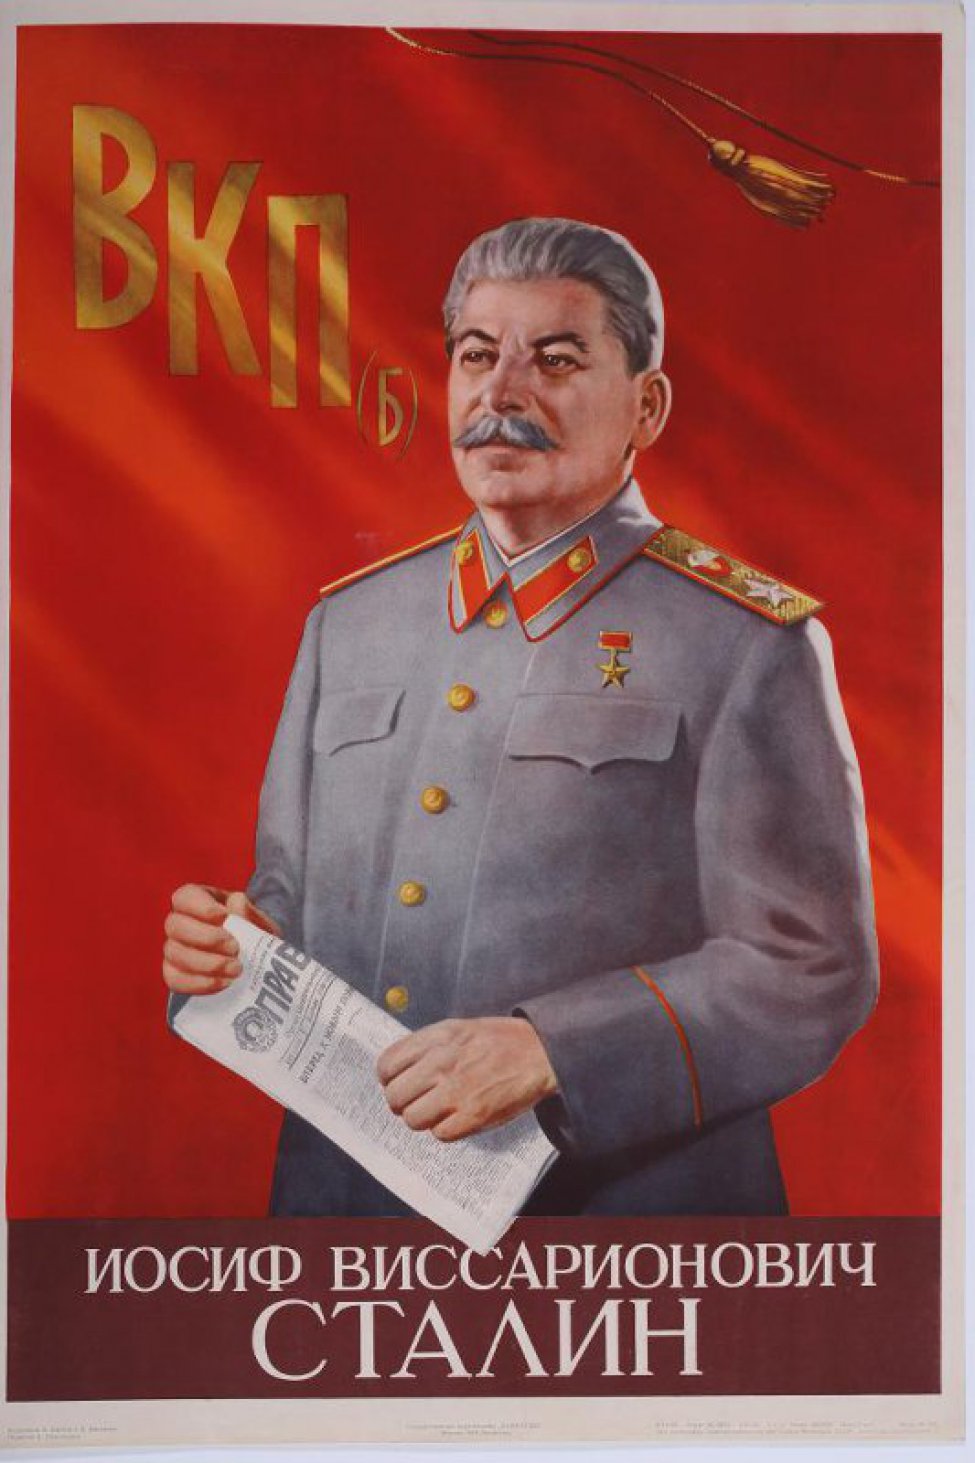 Поясное изображение Иосифа Виссарионовича Сталина, он одет в китель со звездой на груди. Голова и корпус повернуты немного влево; в руках держит газету "Правда". Фон - красное знамя; слева вверху - буквы ВКП (б).